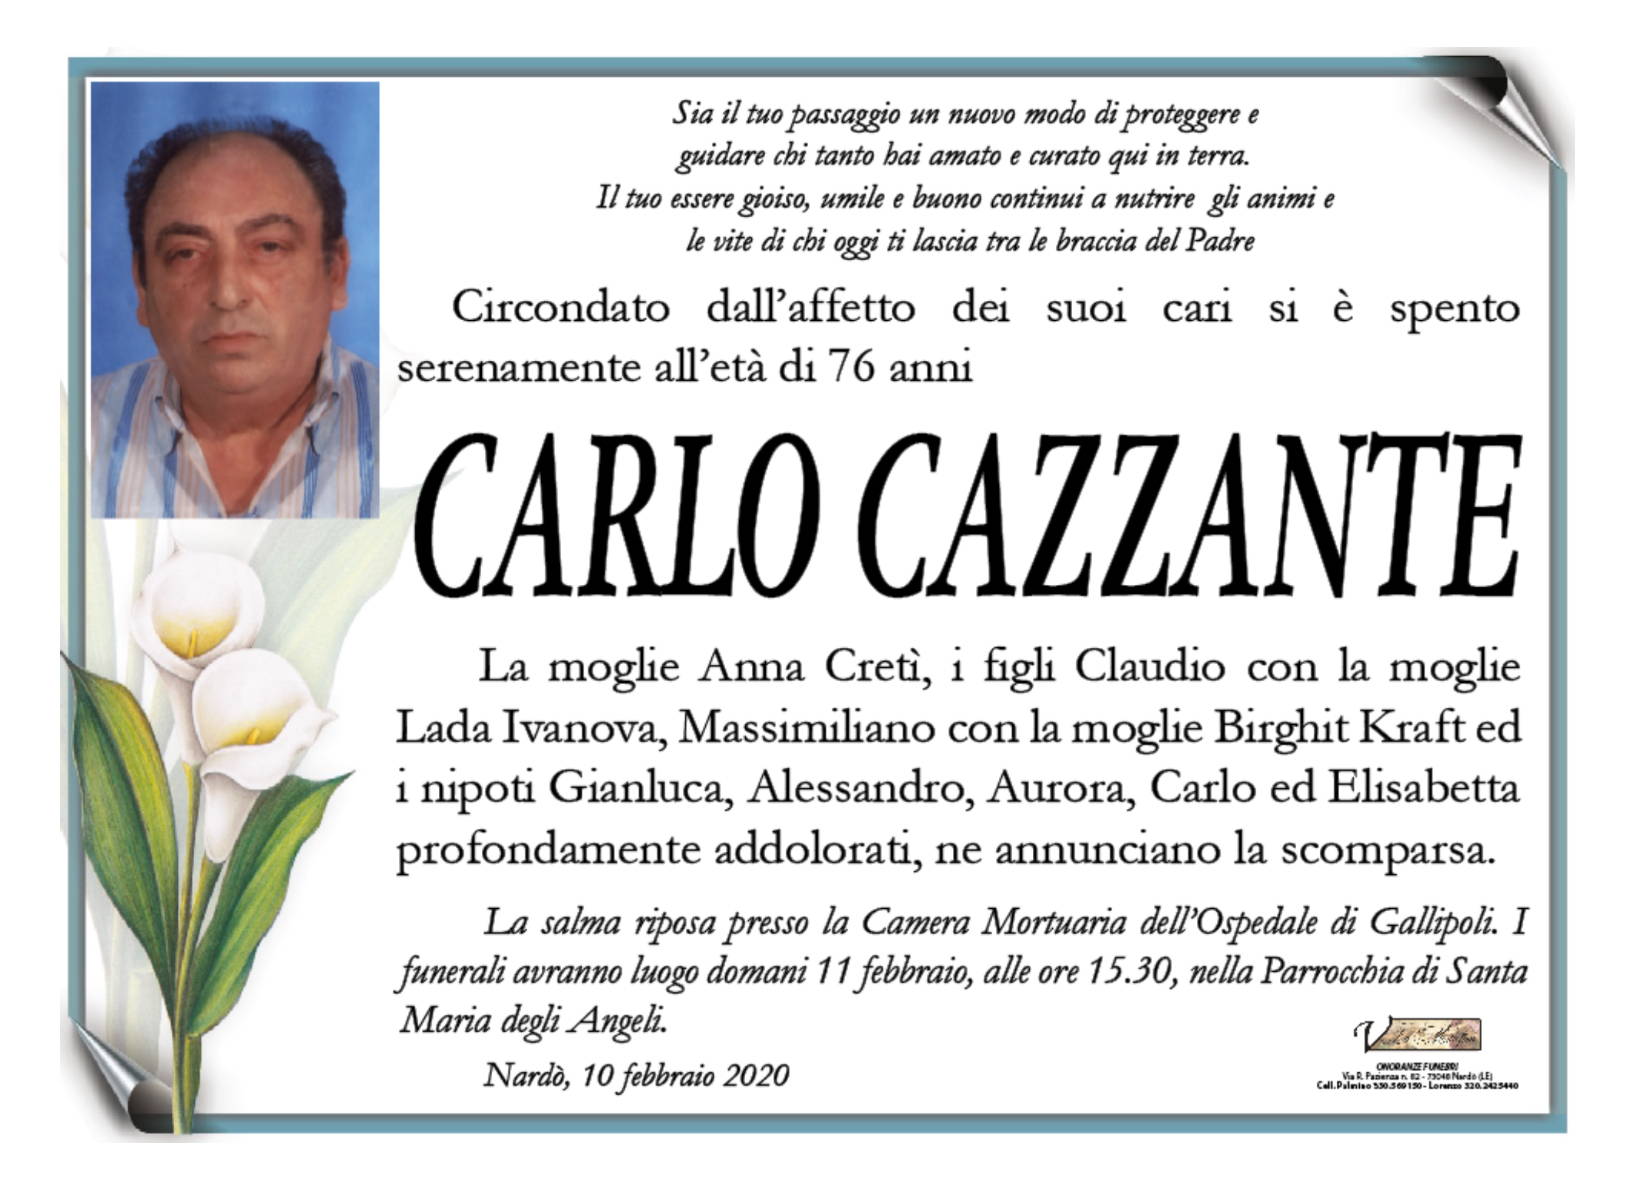 Carlo Cazzante